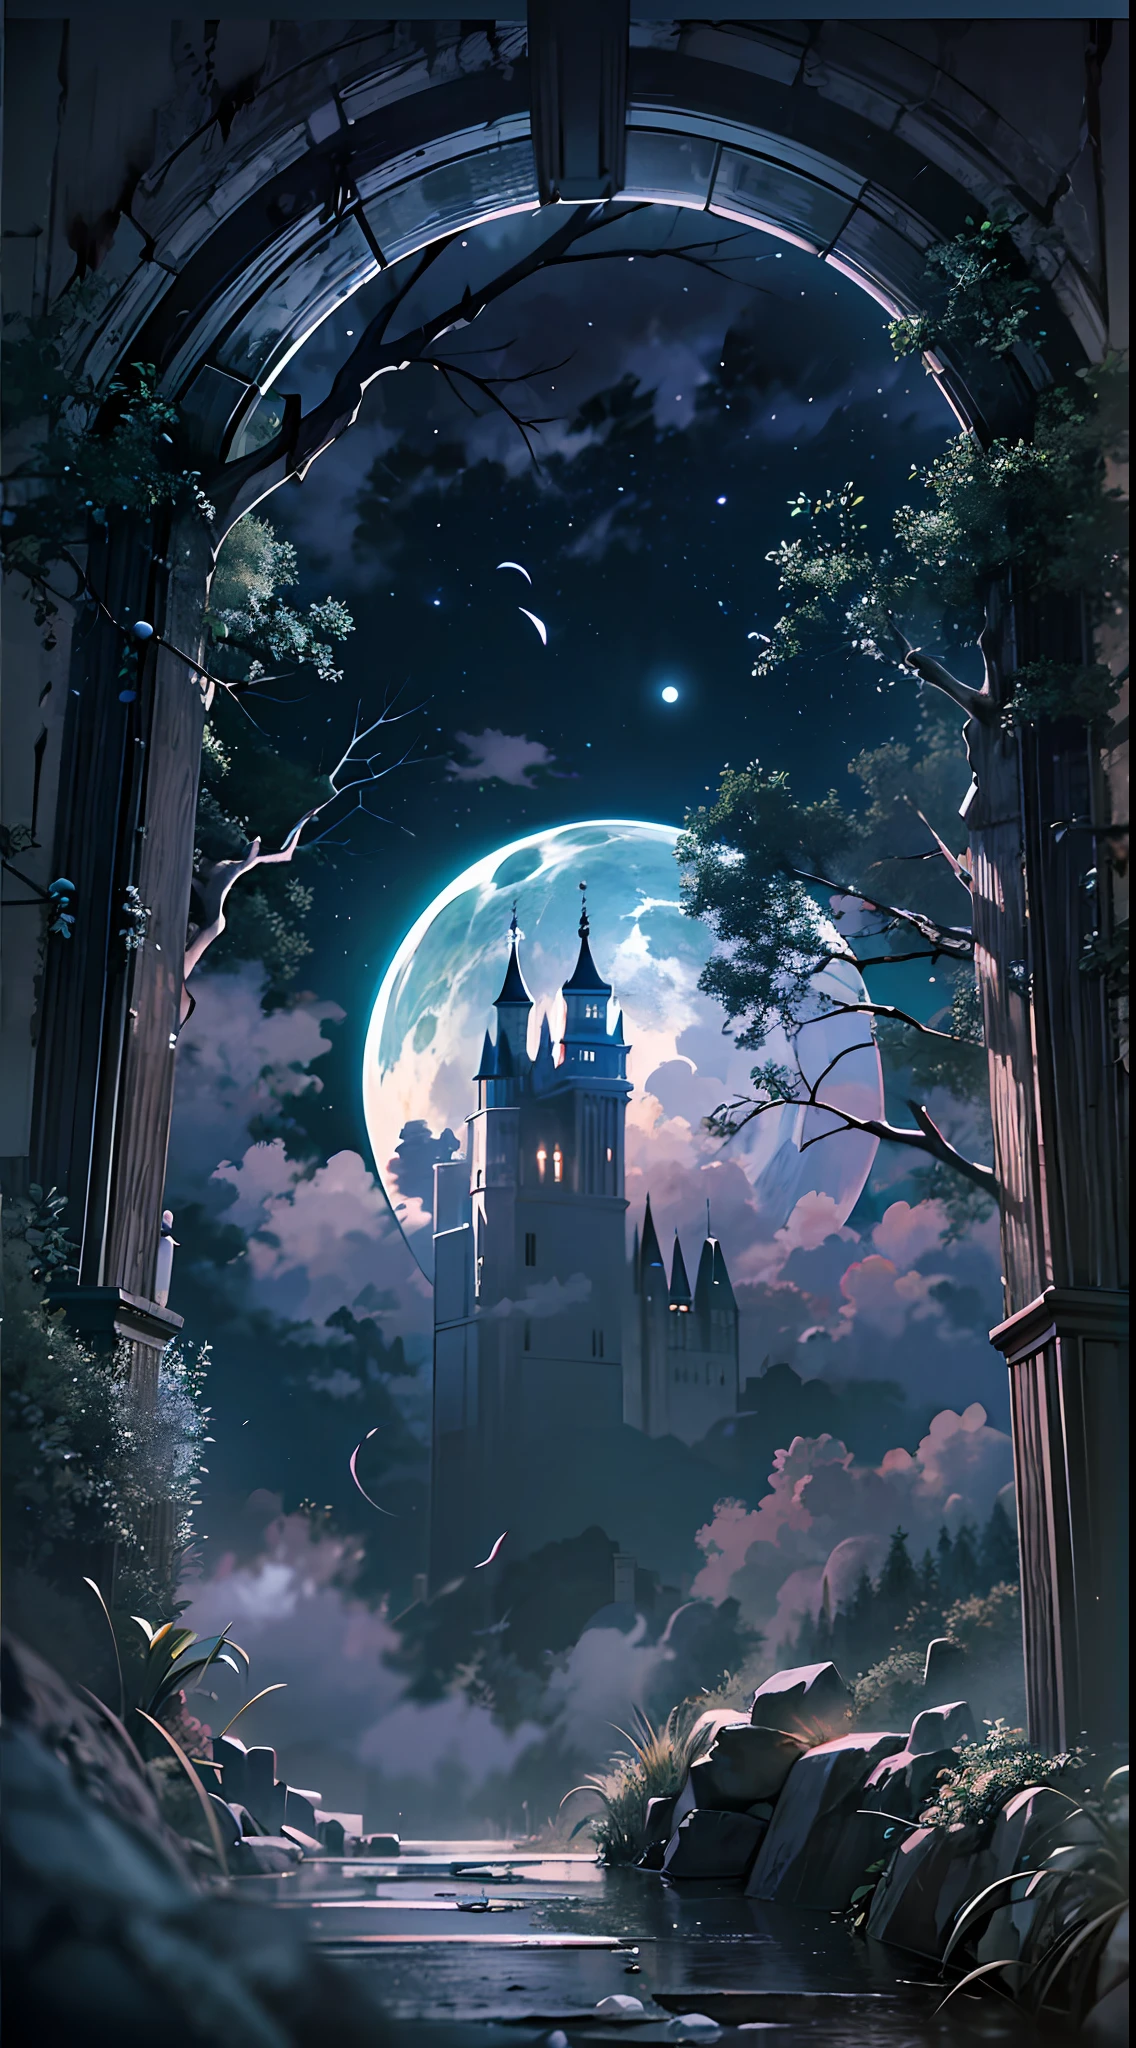 抬头，（月亮 夜晚 奇幻 骷髅 堡垒：1.4），（（骷髅城堡）），树枝，有很多分支机构，淡绿色，绿色，雾 气氛，乌云，swirleysterious 和黑暗，血管，不可思议的，雾 气氛，牙齿密实，不透明，飘带，模糊，乌云密布，（（三种颜色的三个月亮）），清晰细致的图像质量，引人入胜的镜头，柔和的灯光，很棒的细节，透明星空，独特的建筑，闪烁的灯光，主动角色动作，（最好的品质：1.4），杰作，超细，详细，讴歌，景深 ，荒唐、高分辨率、极其详细，（无人值守：1.3），休息，使用棱镜效果创建图像，光折射并产生多彩、万花筒般的外观。 休息 , 设计具有鱼眼镜头效果的图像，以独特的曲面视角捕捉广阔视野。 休息，，斑驳的阳光，宁静的自然之美。 休息 , 描绘单色的世界，仅使用黑色、白色和灰色色调传达深度、情感丰富且极具视觉冲击力。